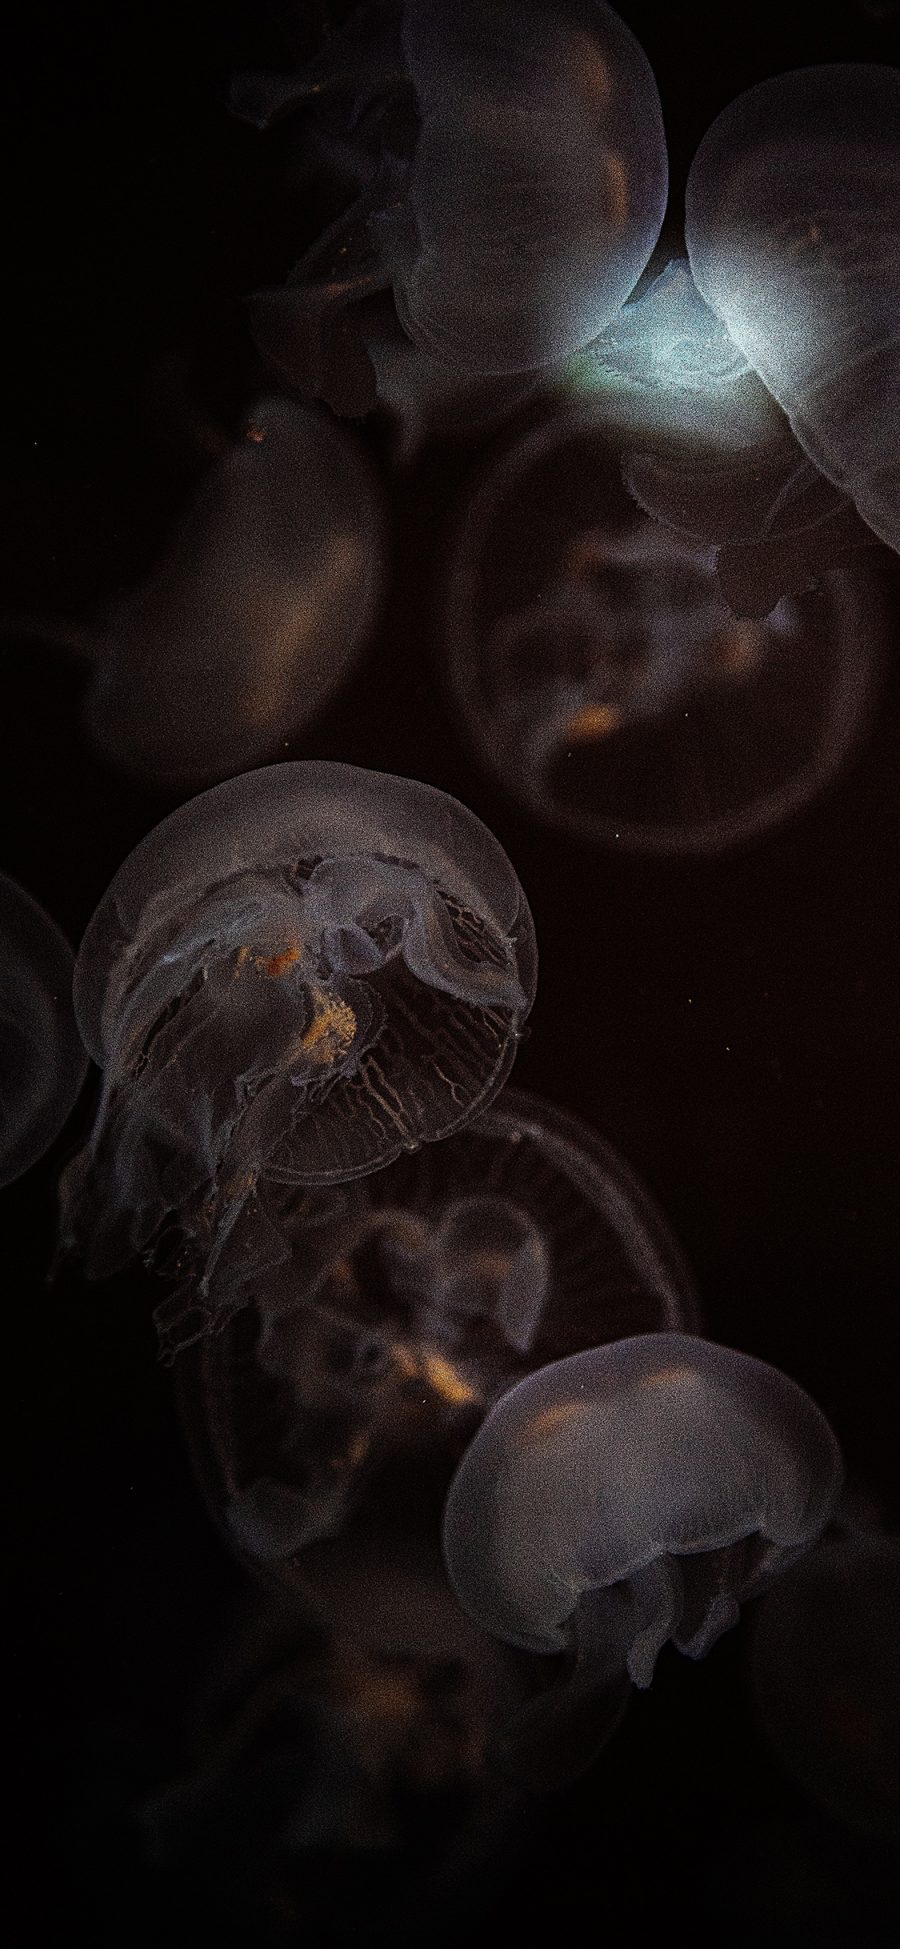 [2436×1125]水母 透明 浮游 海洋生物 苹果手机壁纸图片